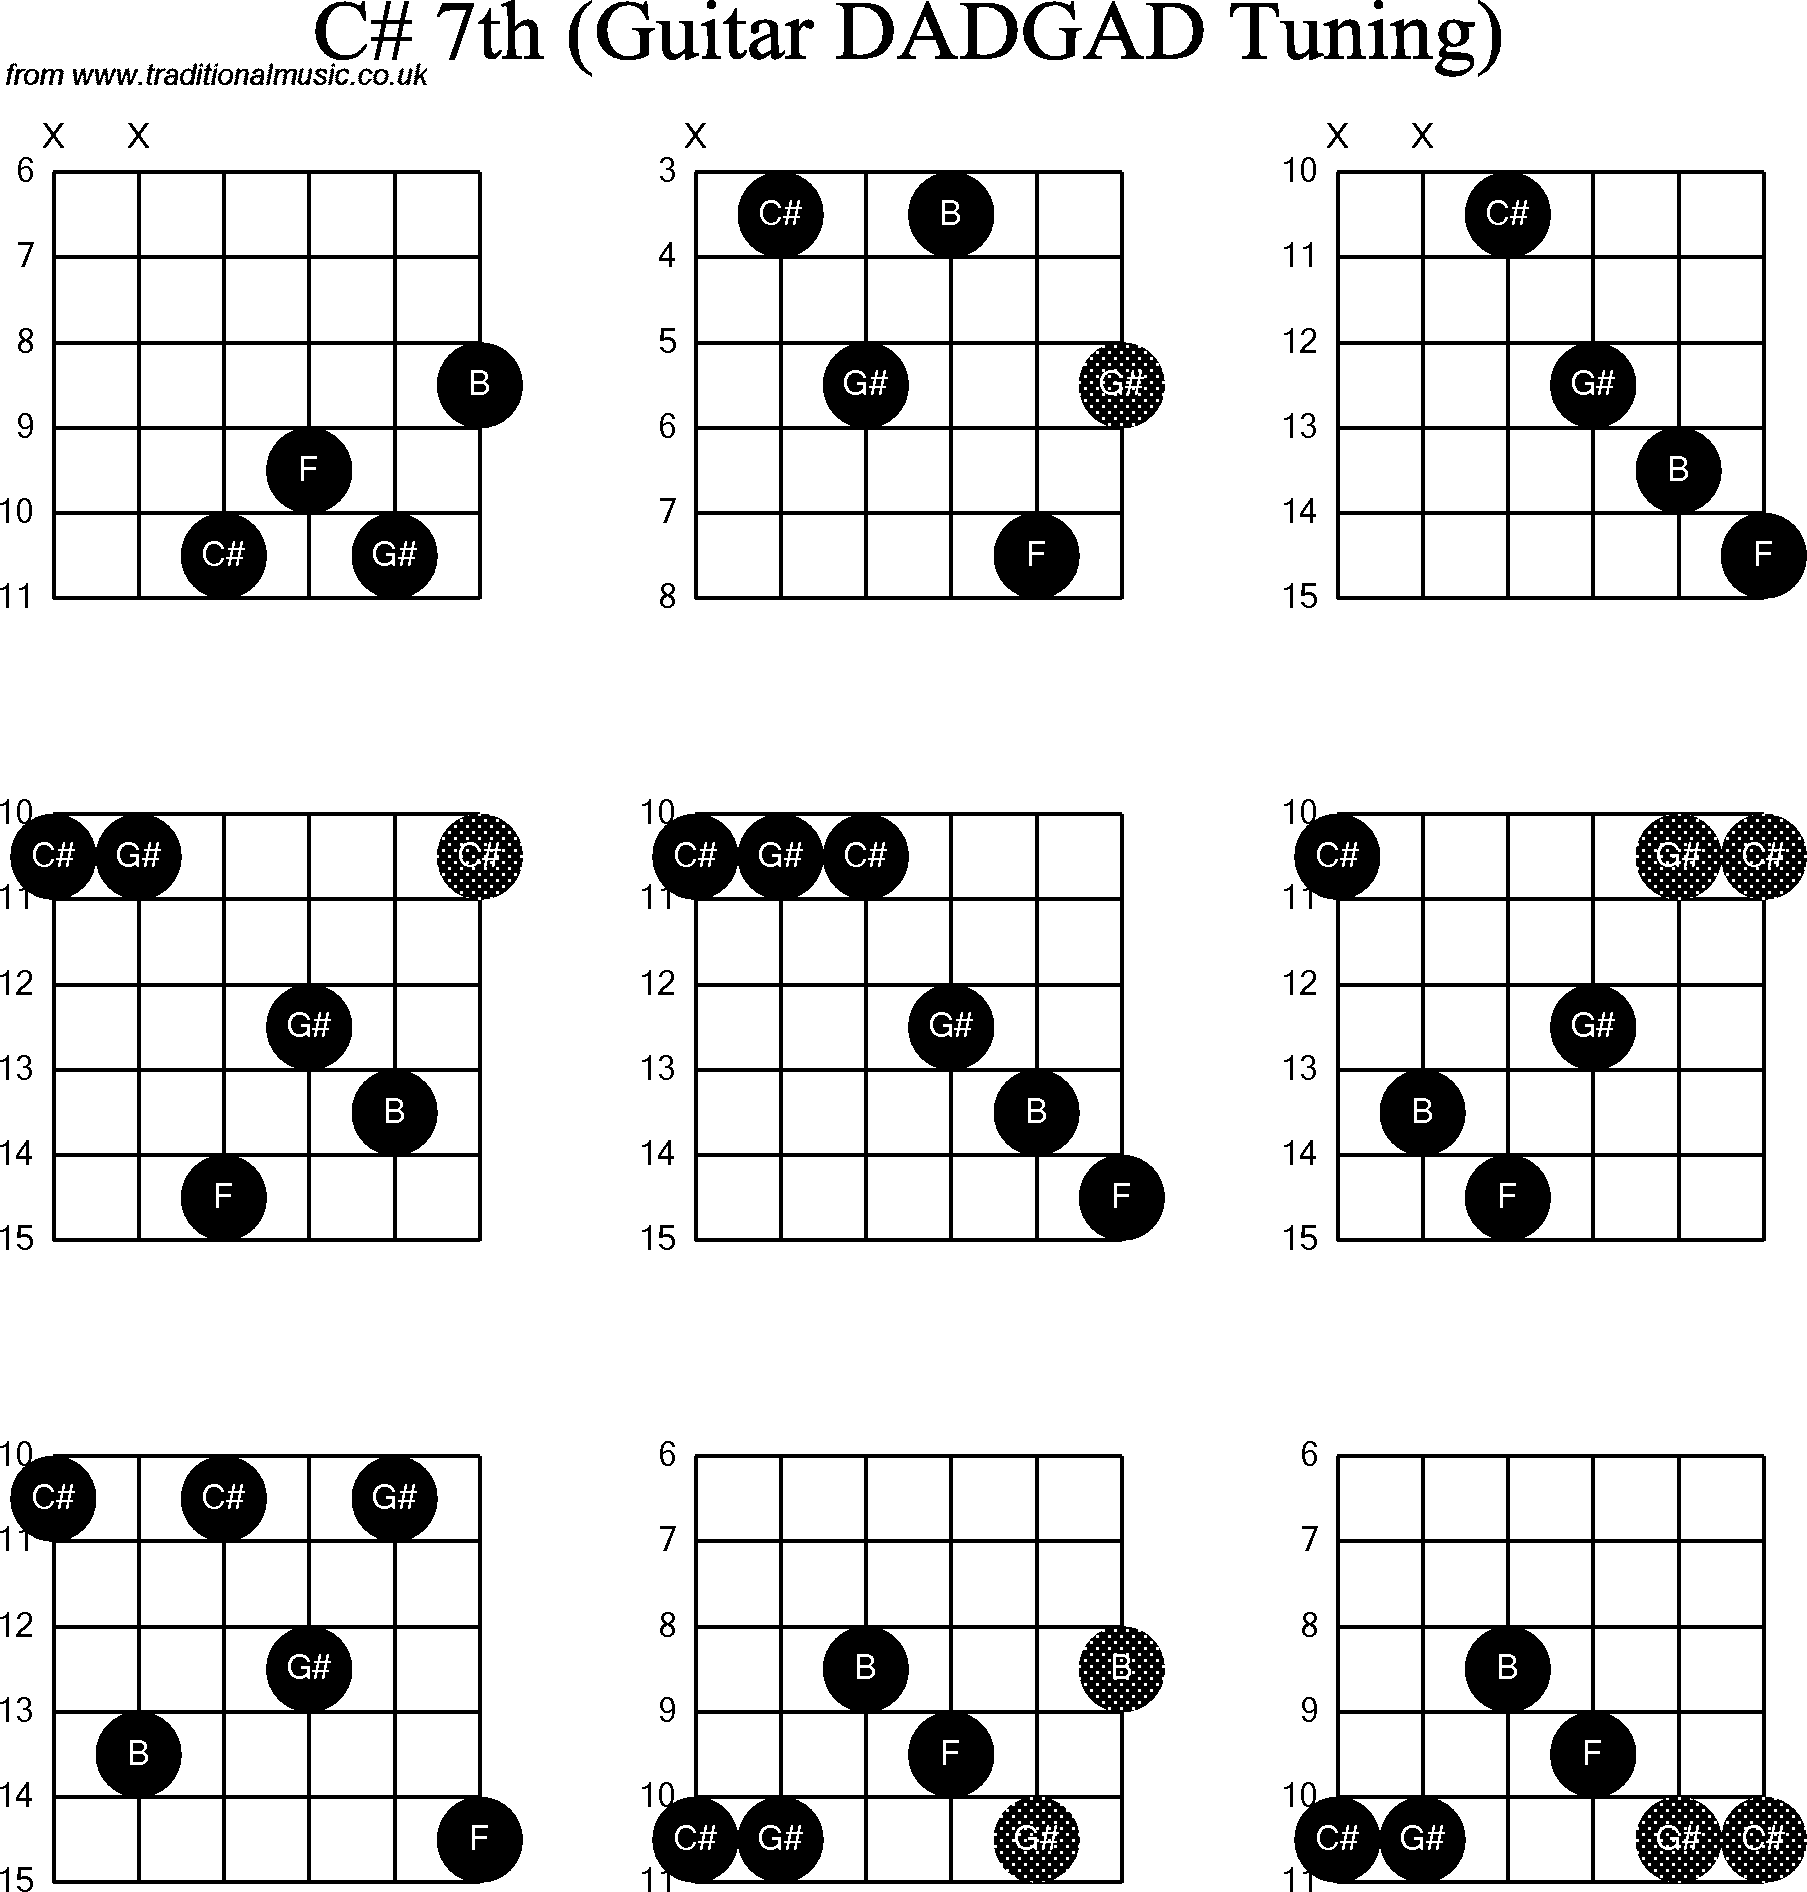 Chord Diagrams for D Modal Guitar(DADGAD), C Sharp7th